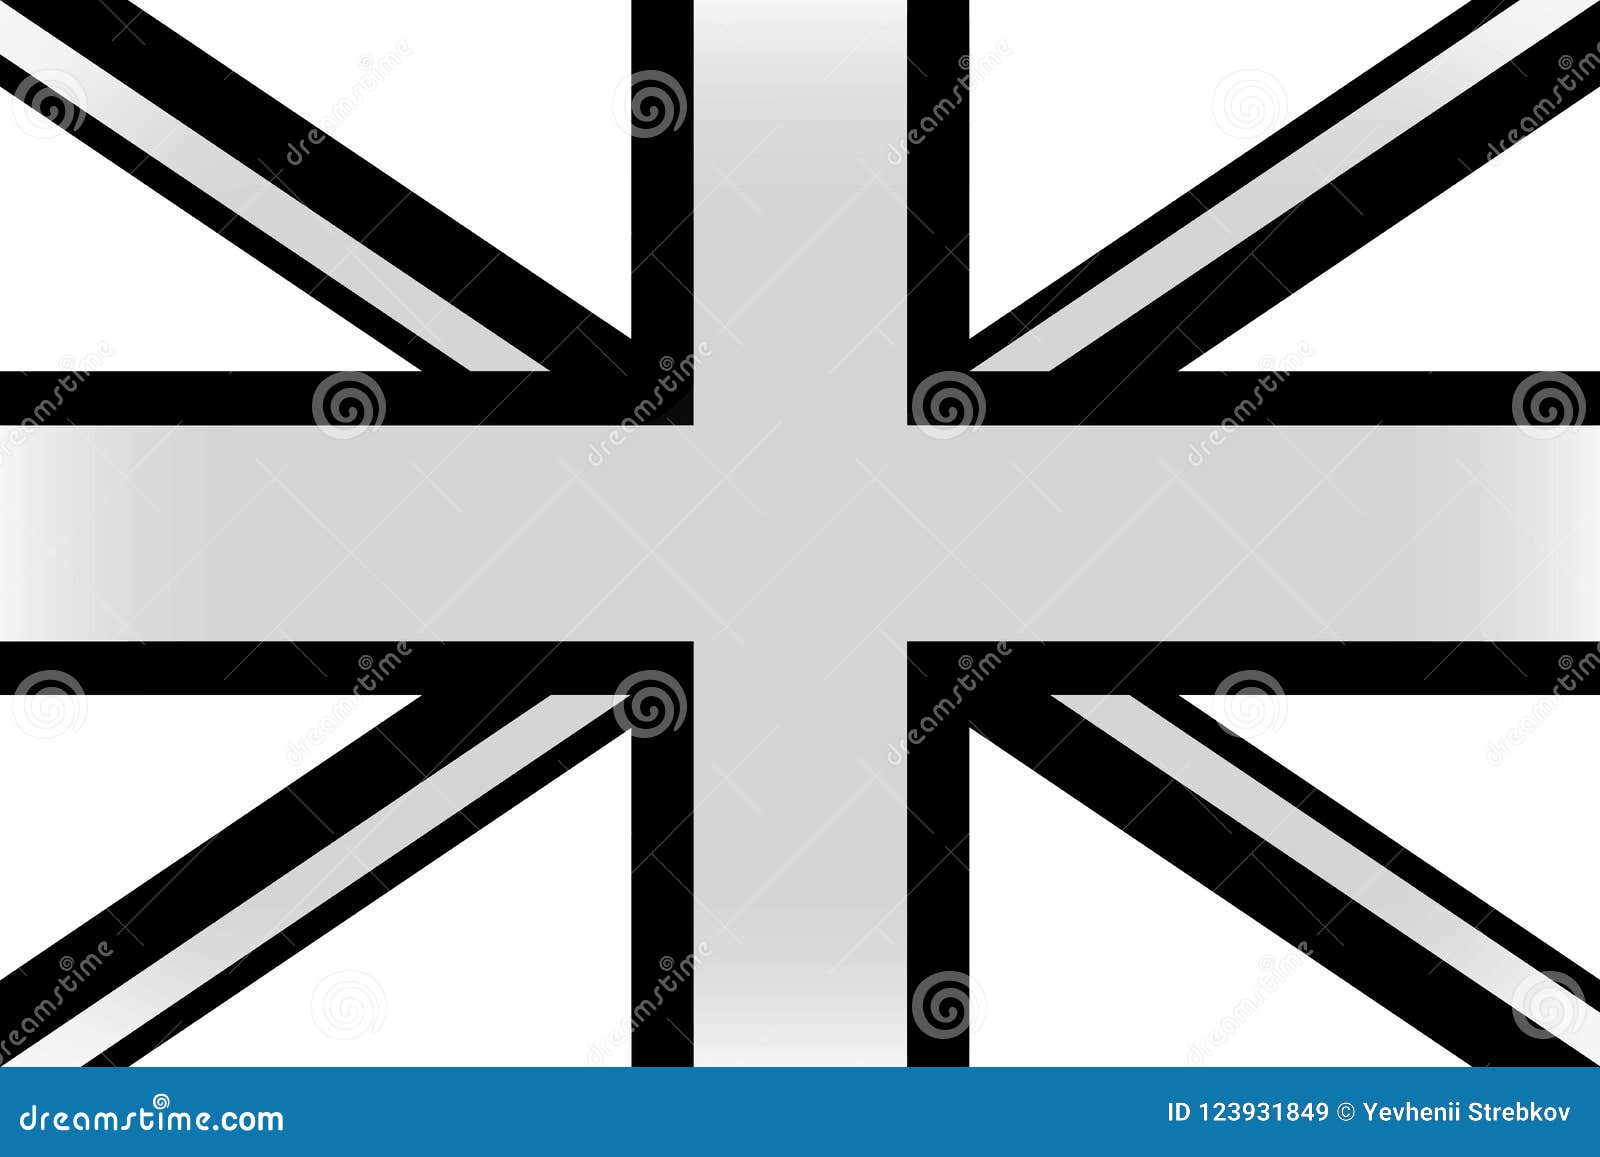 Flagge Von England In Schwarzweiss Stock Abbildung Illustration Von Patriotismus Abbildung 123931849